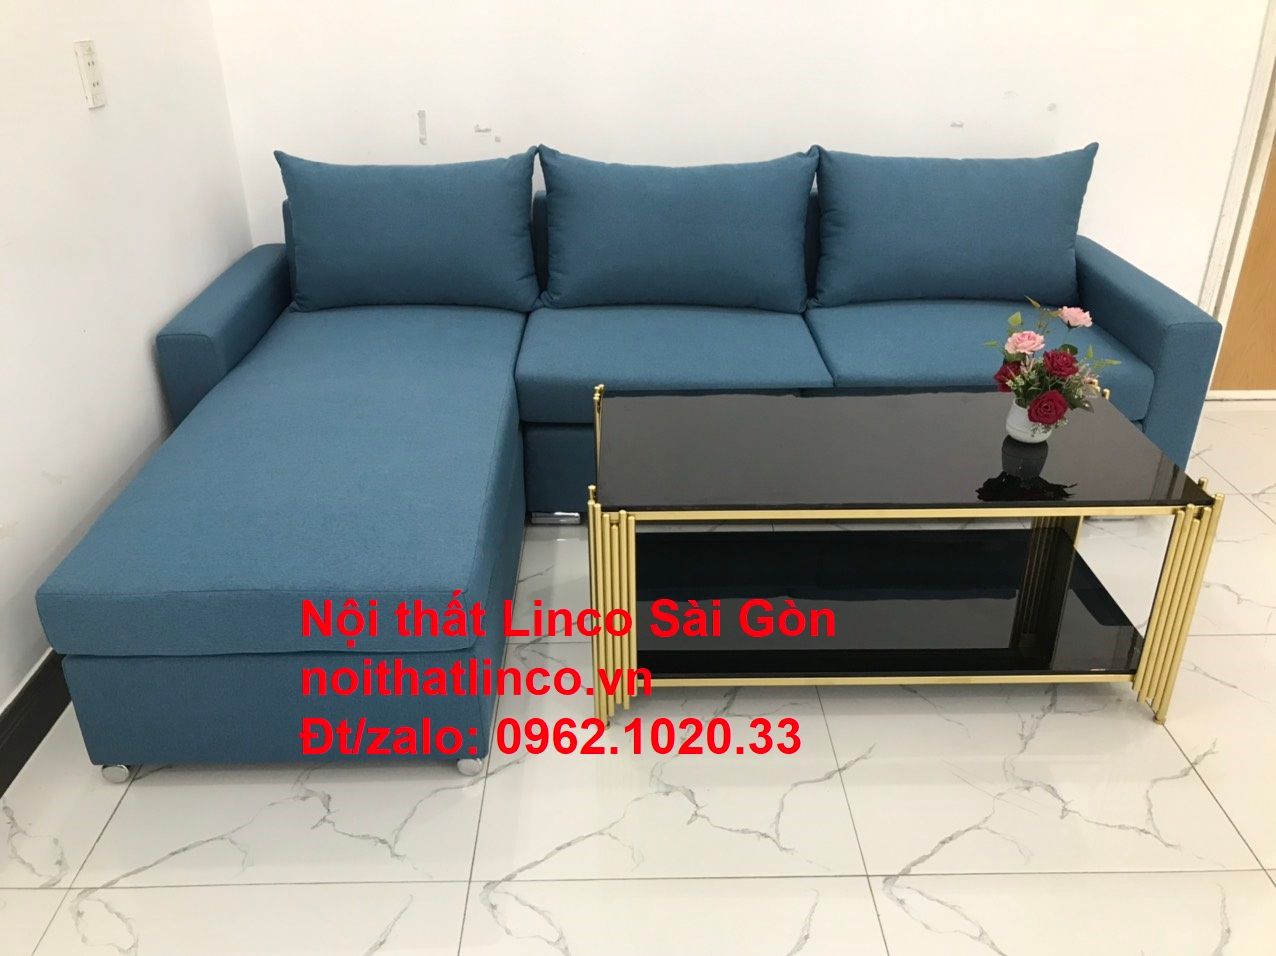  Bộ bàn ghế sofa góc L 2m2 x 1m6 màu xanh dương giá rẻ 